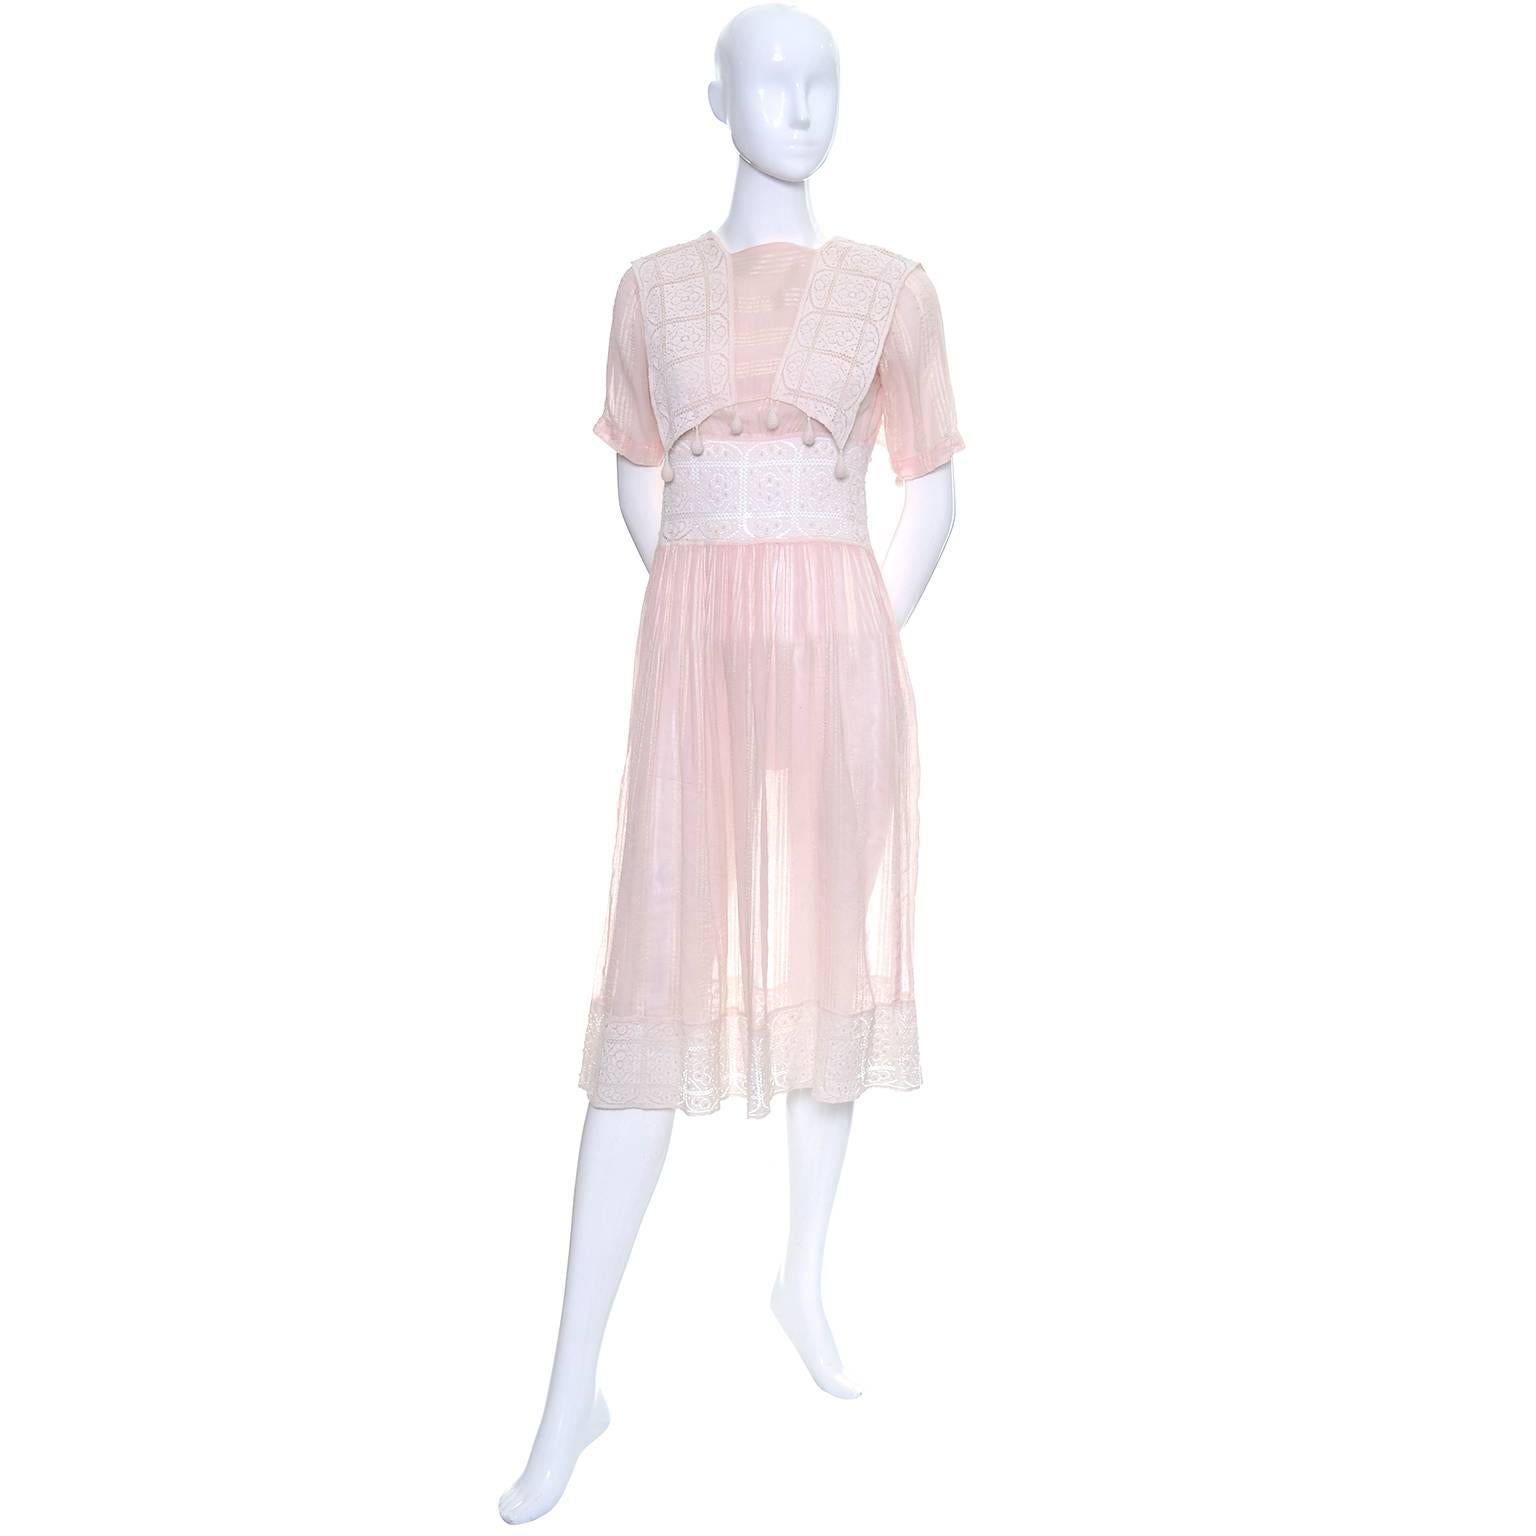 Dieses hübsche Vintage-Kleid ist aus einem halbtransparenten rosa Baumwoll-Voile mit Ton-in-Ton-Streifen und schöner Häkelspitze gefertigt.  Das Kleid lässt sich an mehreren Stellen mit Druckknöpfen schließen und das hübsche Mieder ist mit